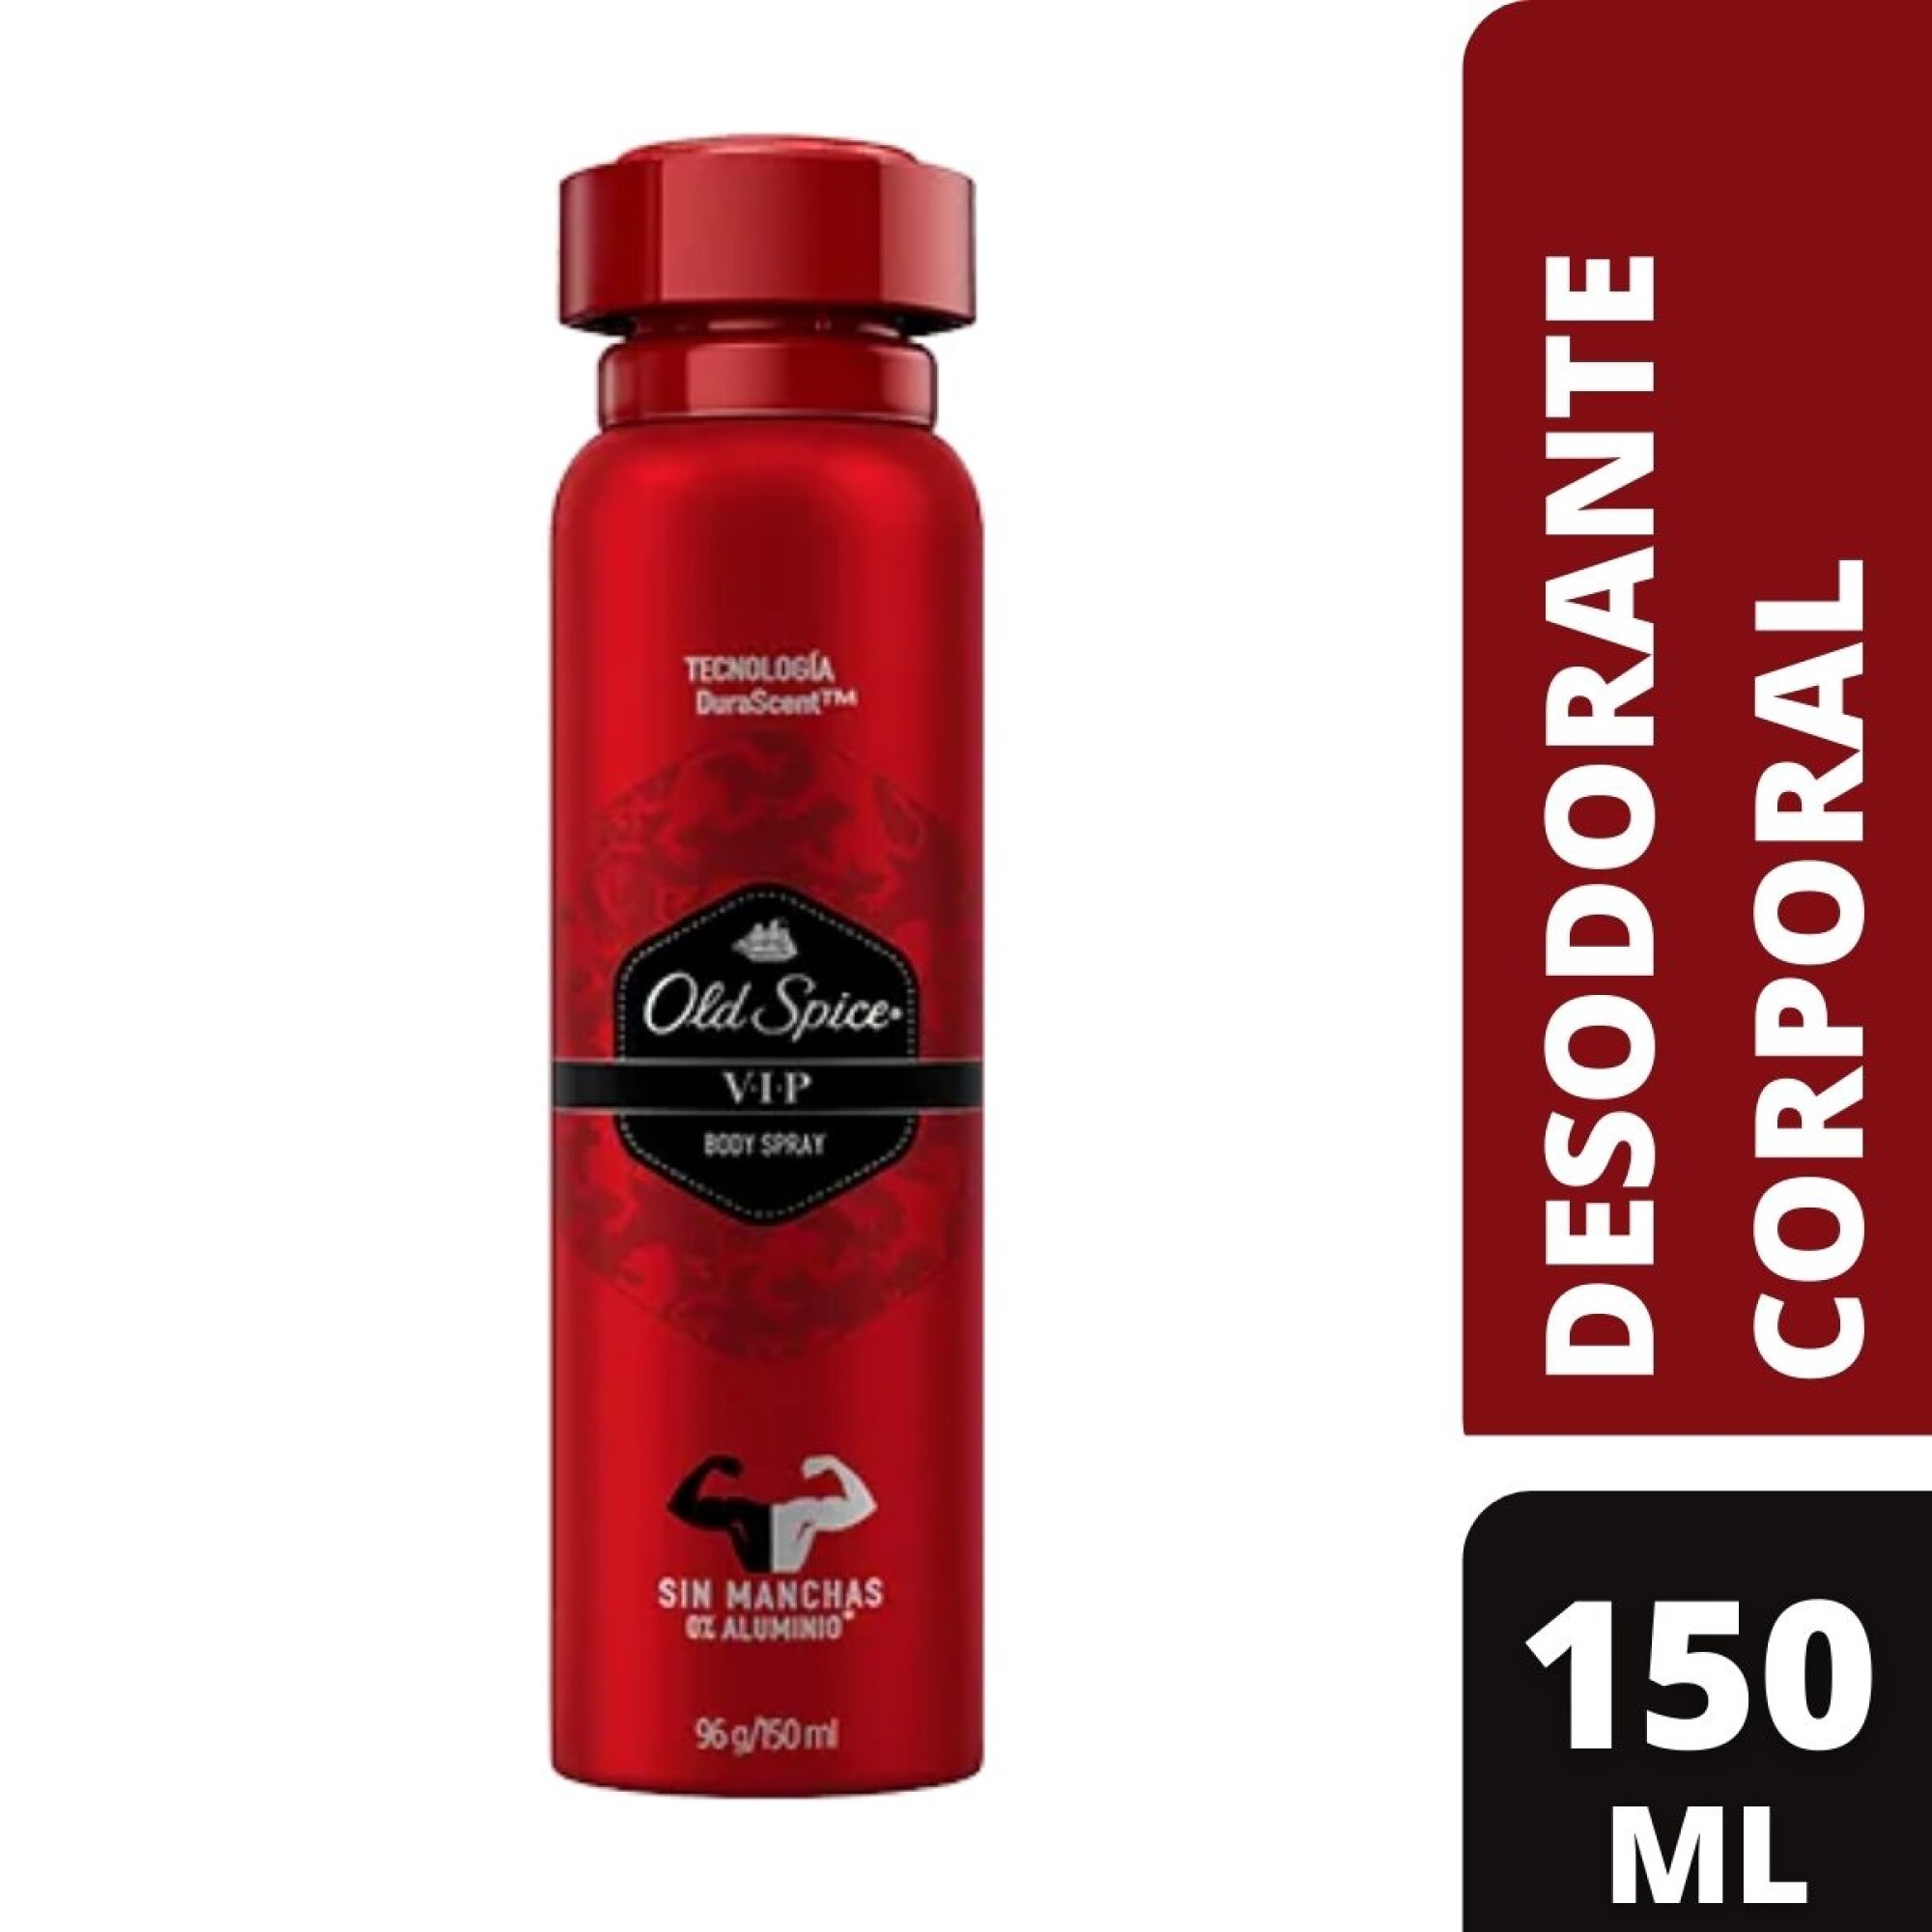 En la actualidad Terminología fluctuar Desodorante Old Spice Aerosol V. I. P. 150 ML — Coral